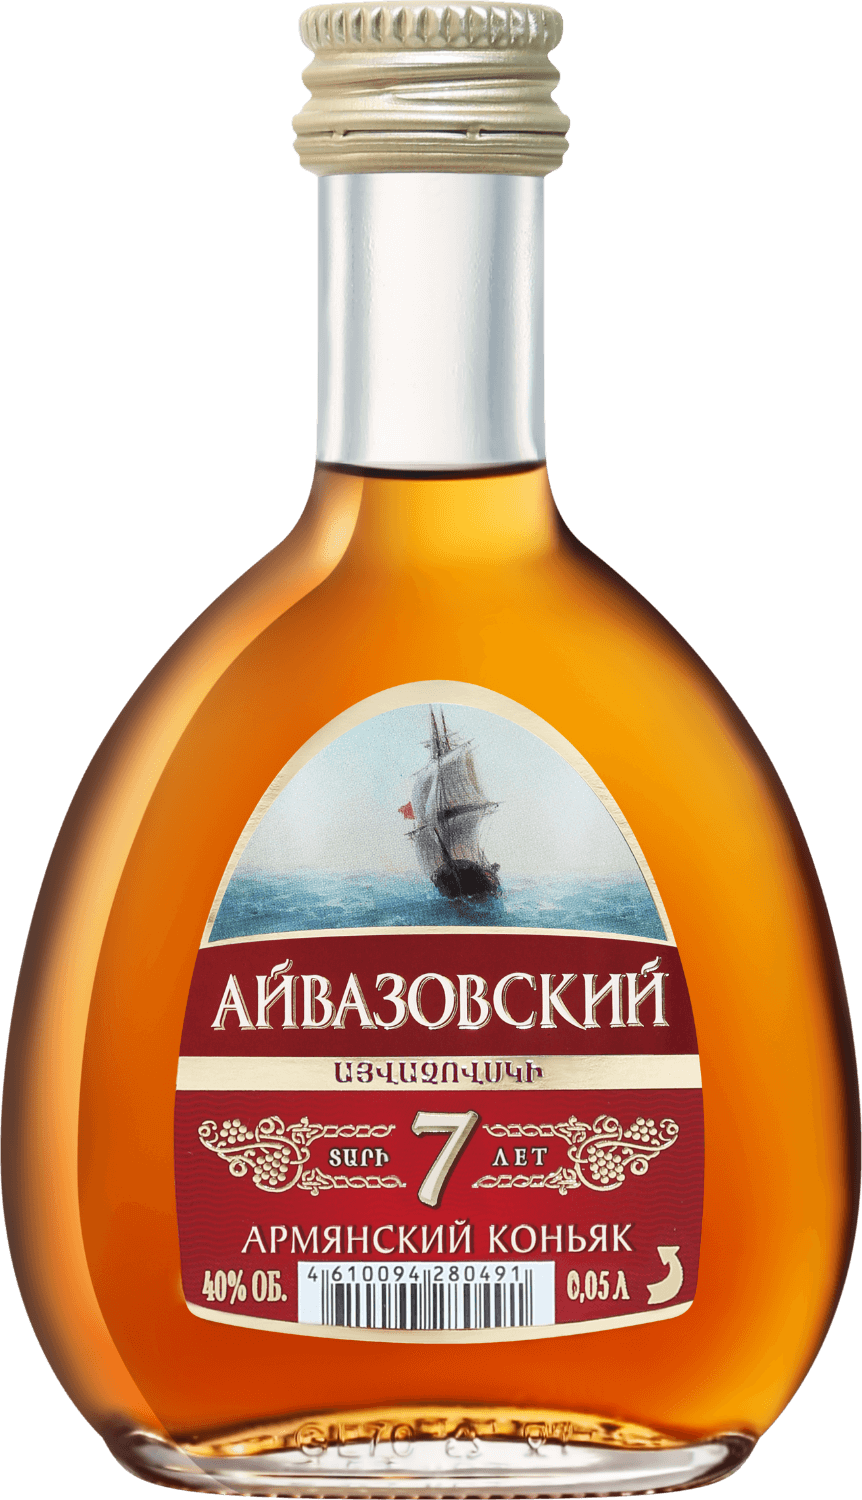 aivazovsky armenian brandy 5 y o Aivazovsky Armenian Brandy 7 Y.O.